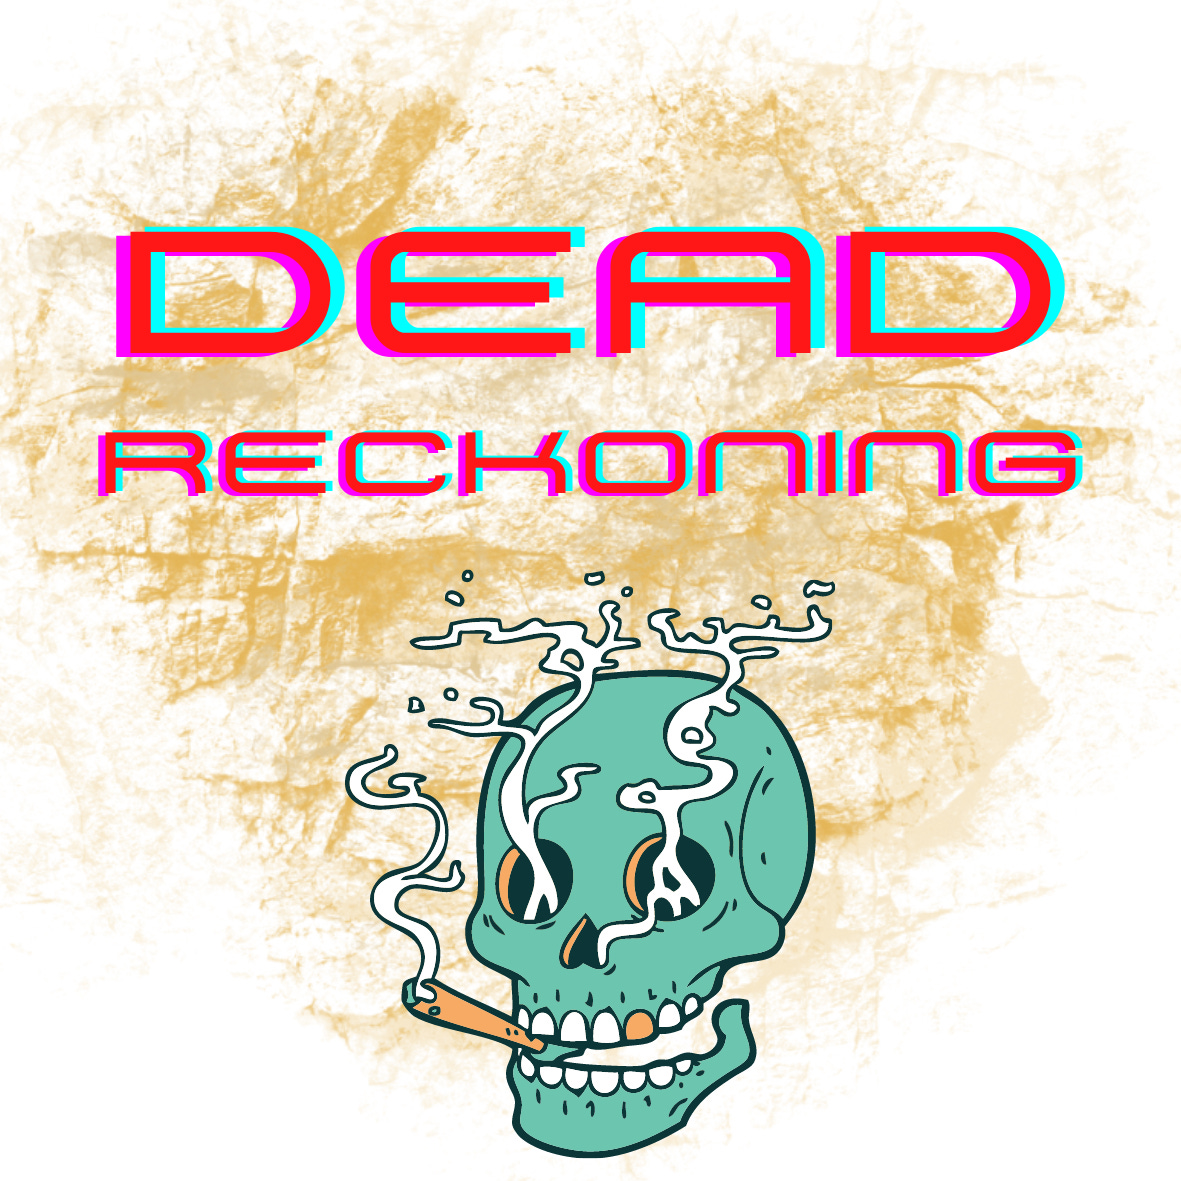 Dead Reckoning